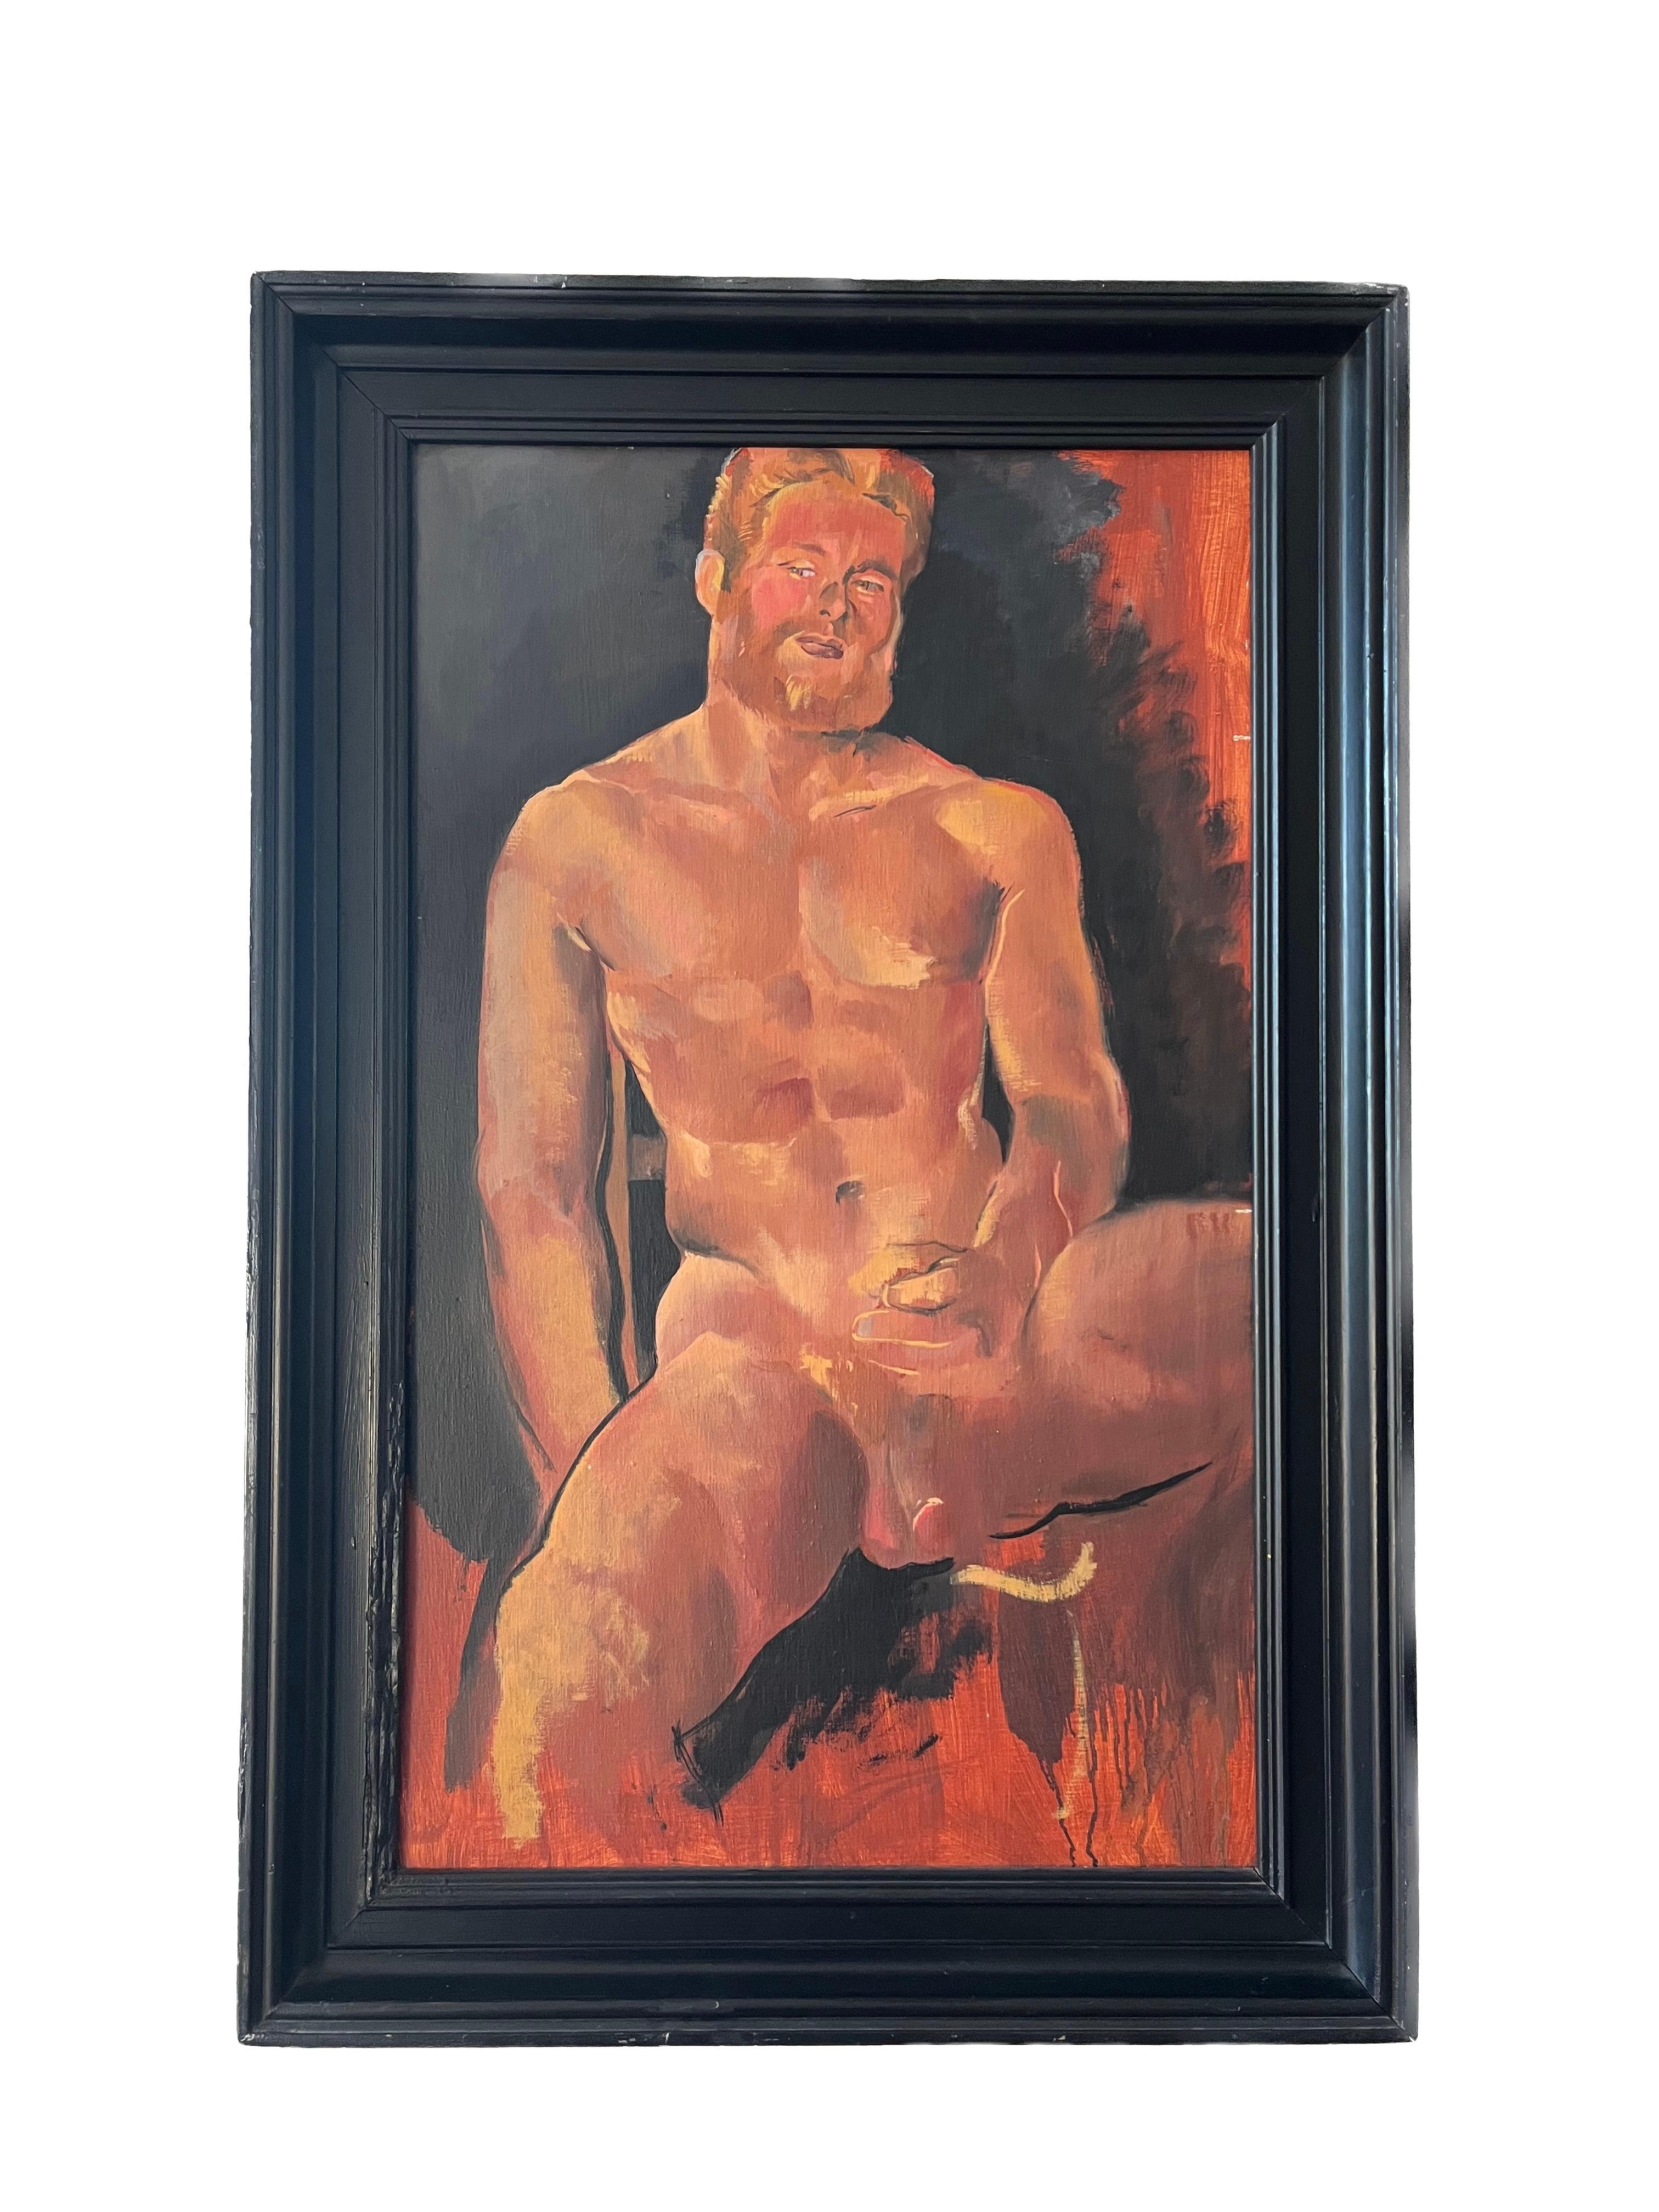 1980er Jahre Erotischer männlicher Akt, Porträt des Liebhabers des Künstlers, ikonisches Stück aus der Geschichte der Homosexualität – Painting von Philip Core